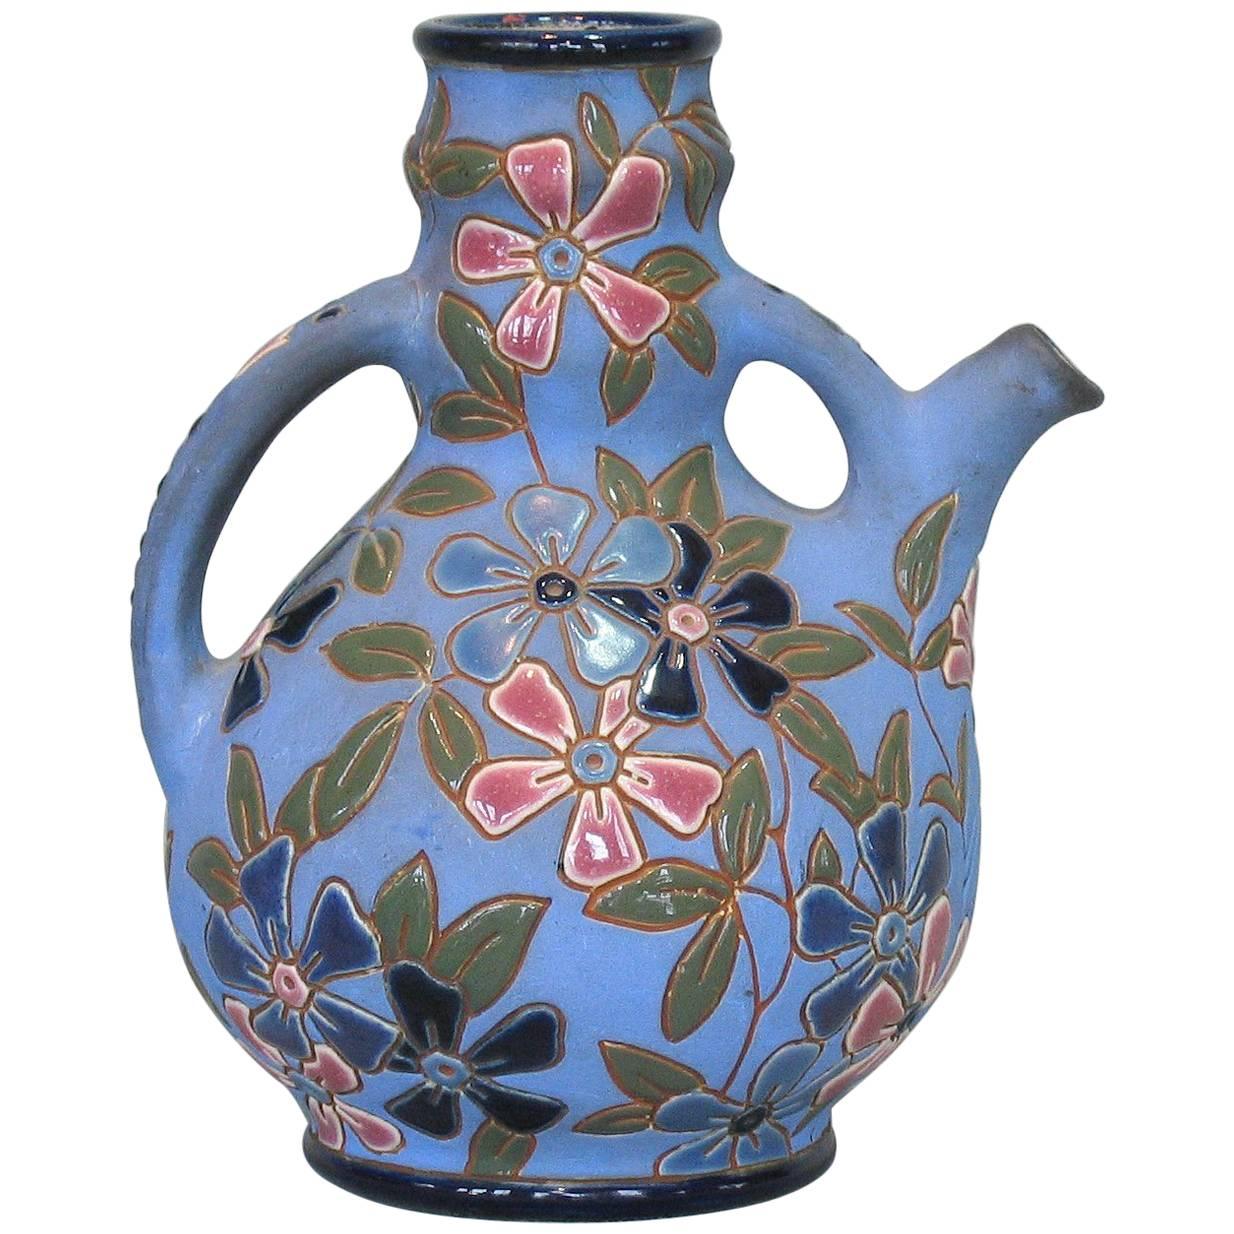 Czechoslovakian Glazed Earthenware Pitcher by Amphora, circa 1918-1939